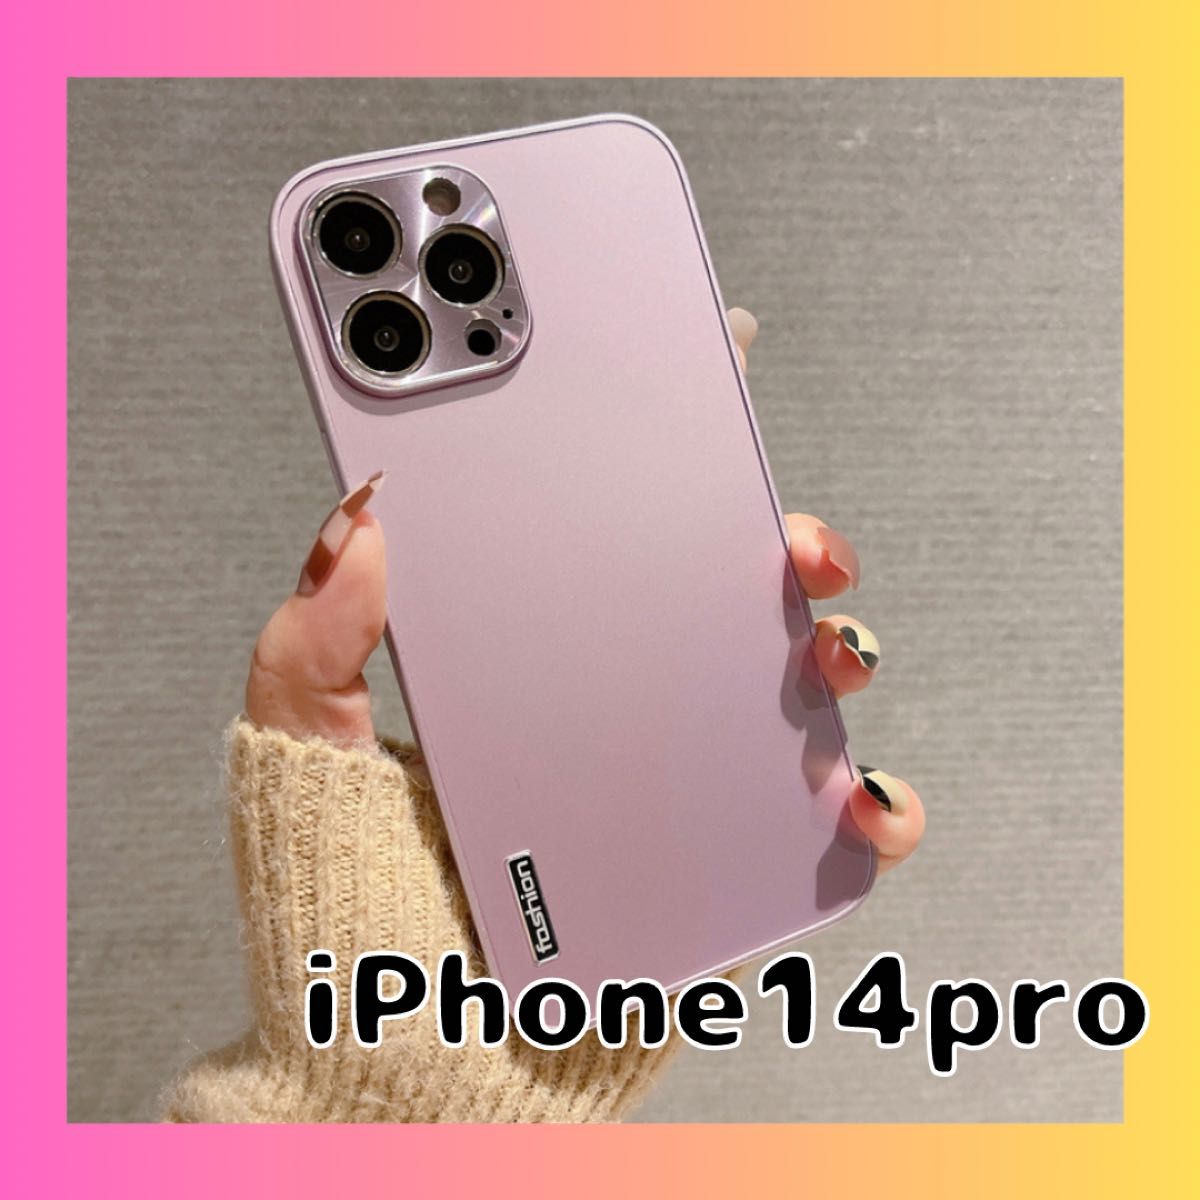 iPhone14 pro スマホケース カバー ピンク 桃色 アルミ 軽量 耐衝撃 おしゃれ ハードケース シンプル 大人かっこい